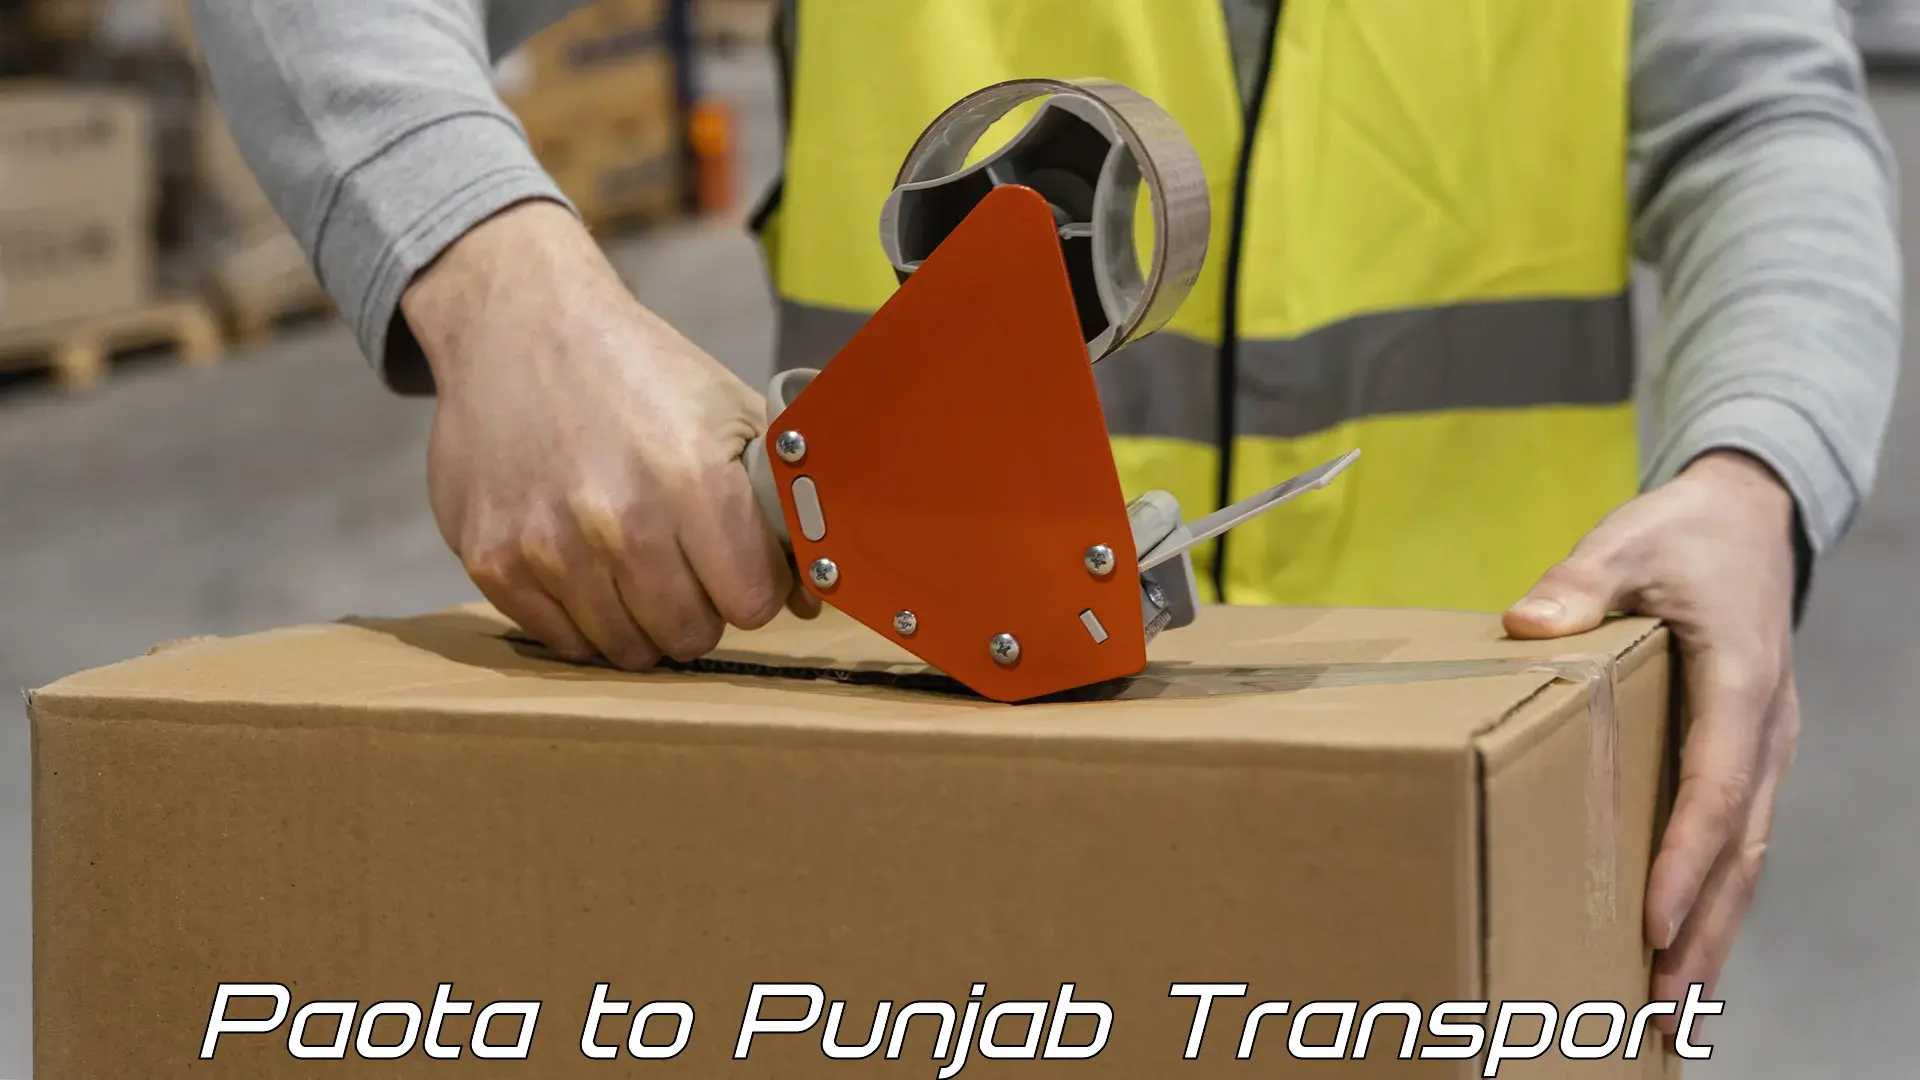 Luggage transport services Paota to Central University of Punjab Bathinda